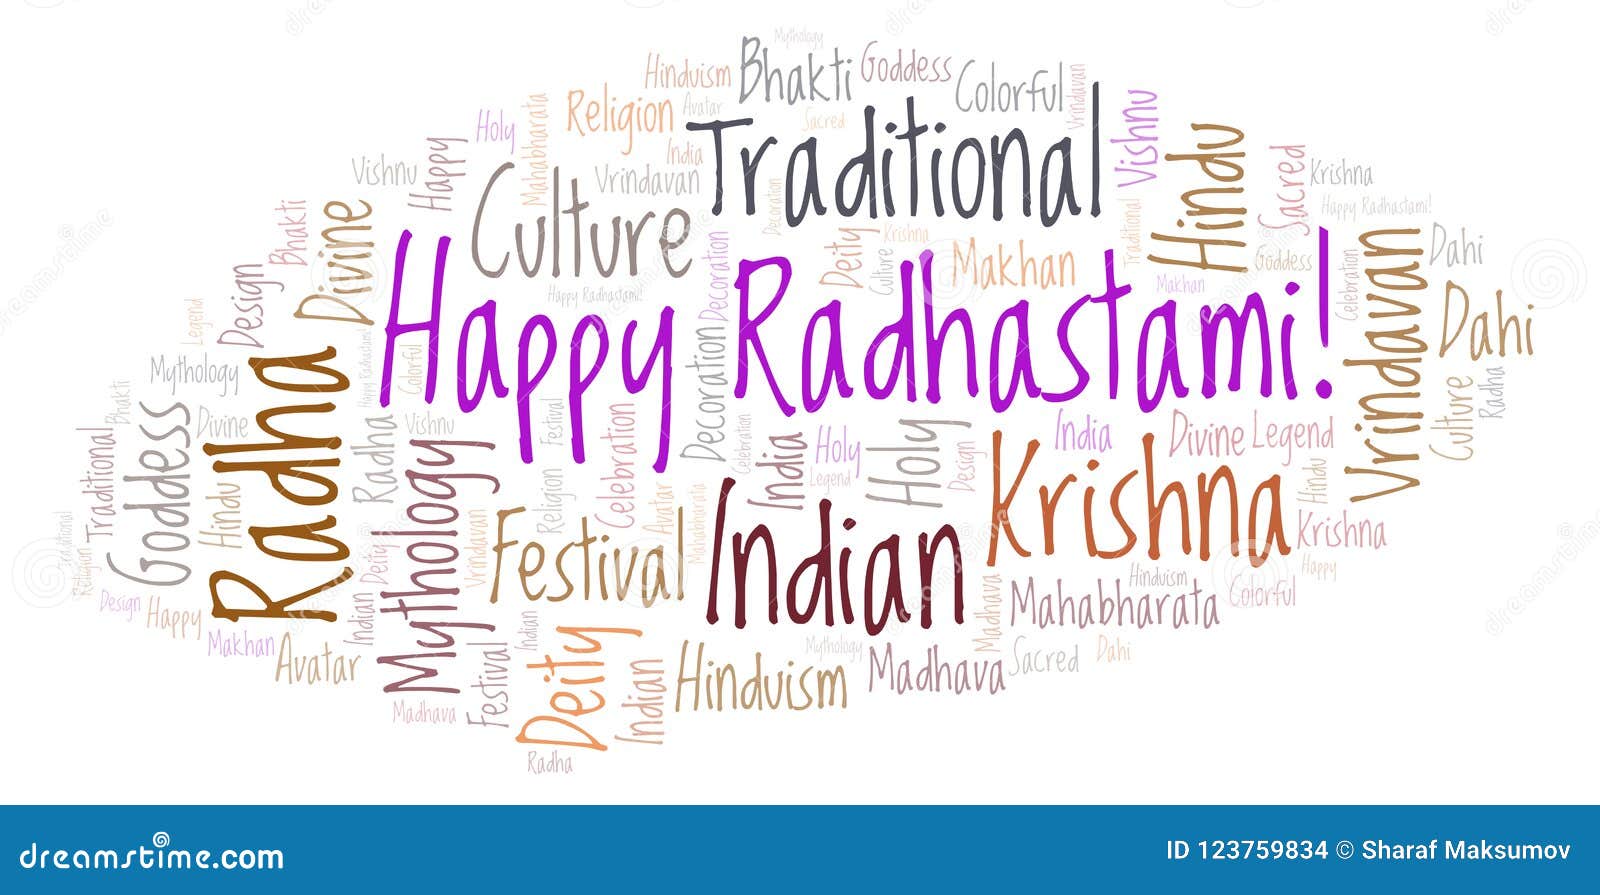 Happy Radhastami Stock Illustrations – 6 Happy Radhastami Stock ...